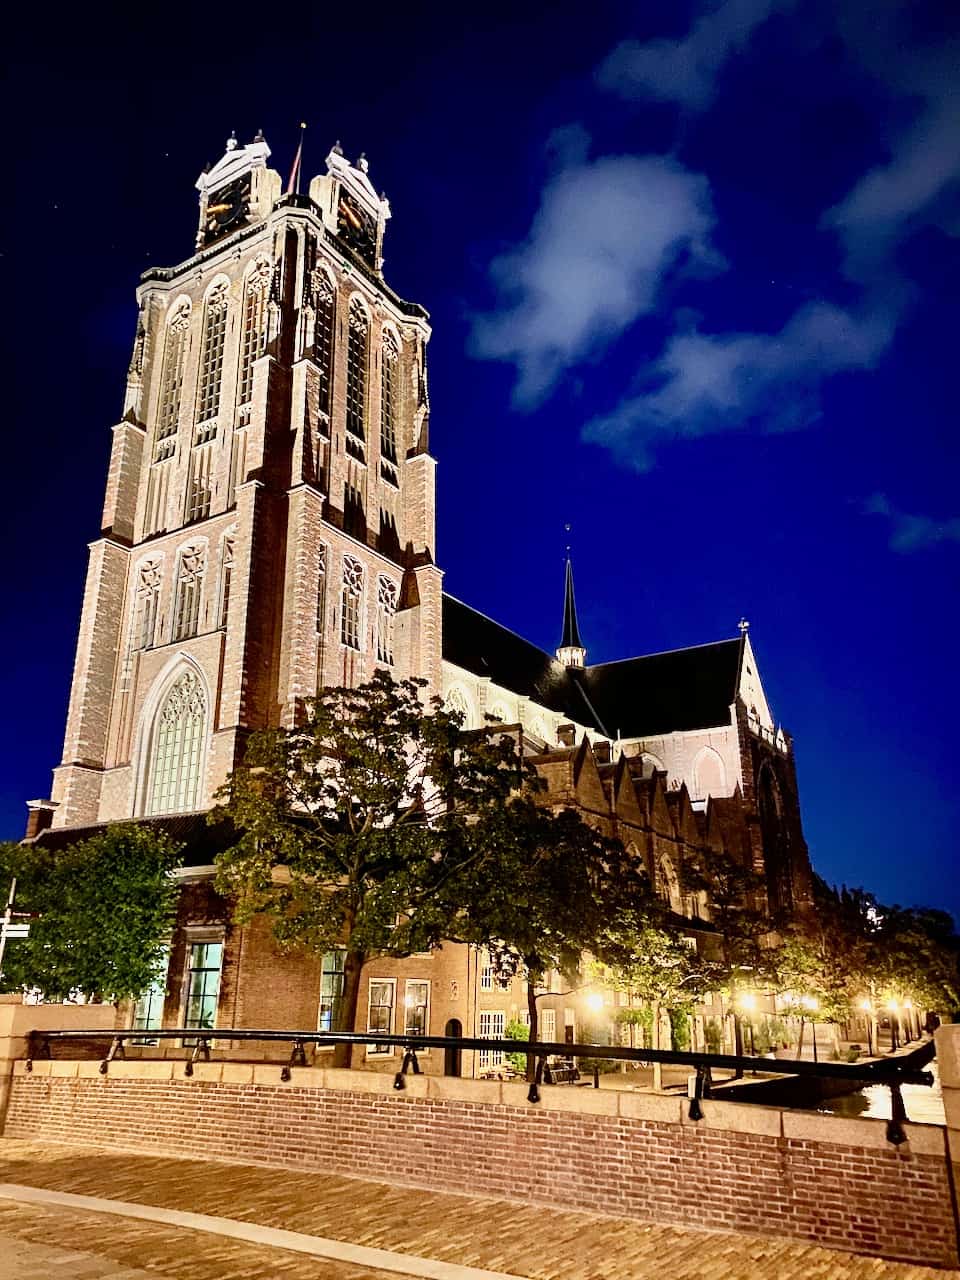 grote-kerk-dordrecht-night-photo